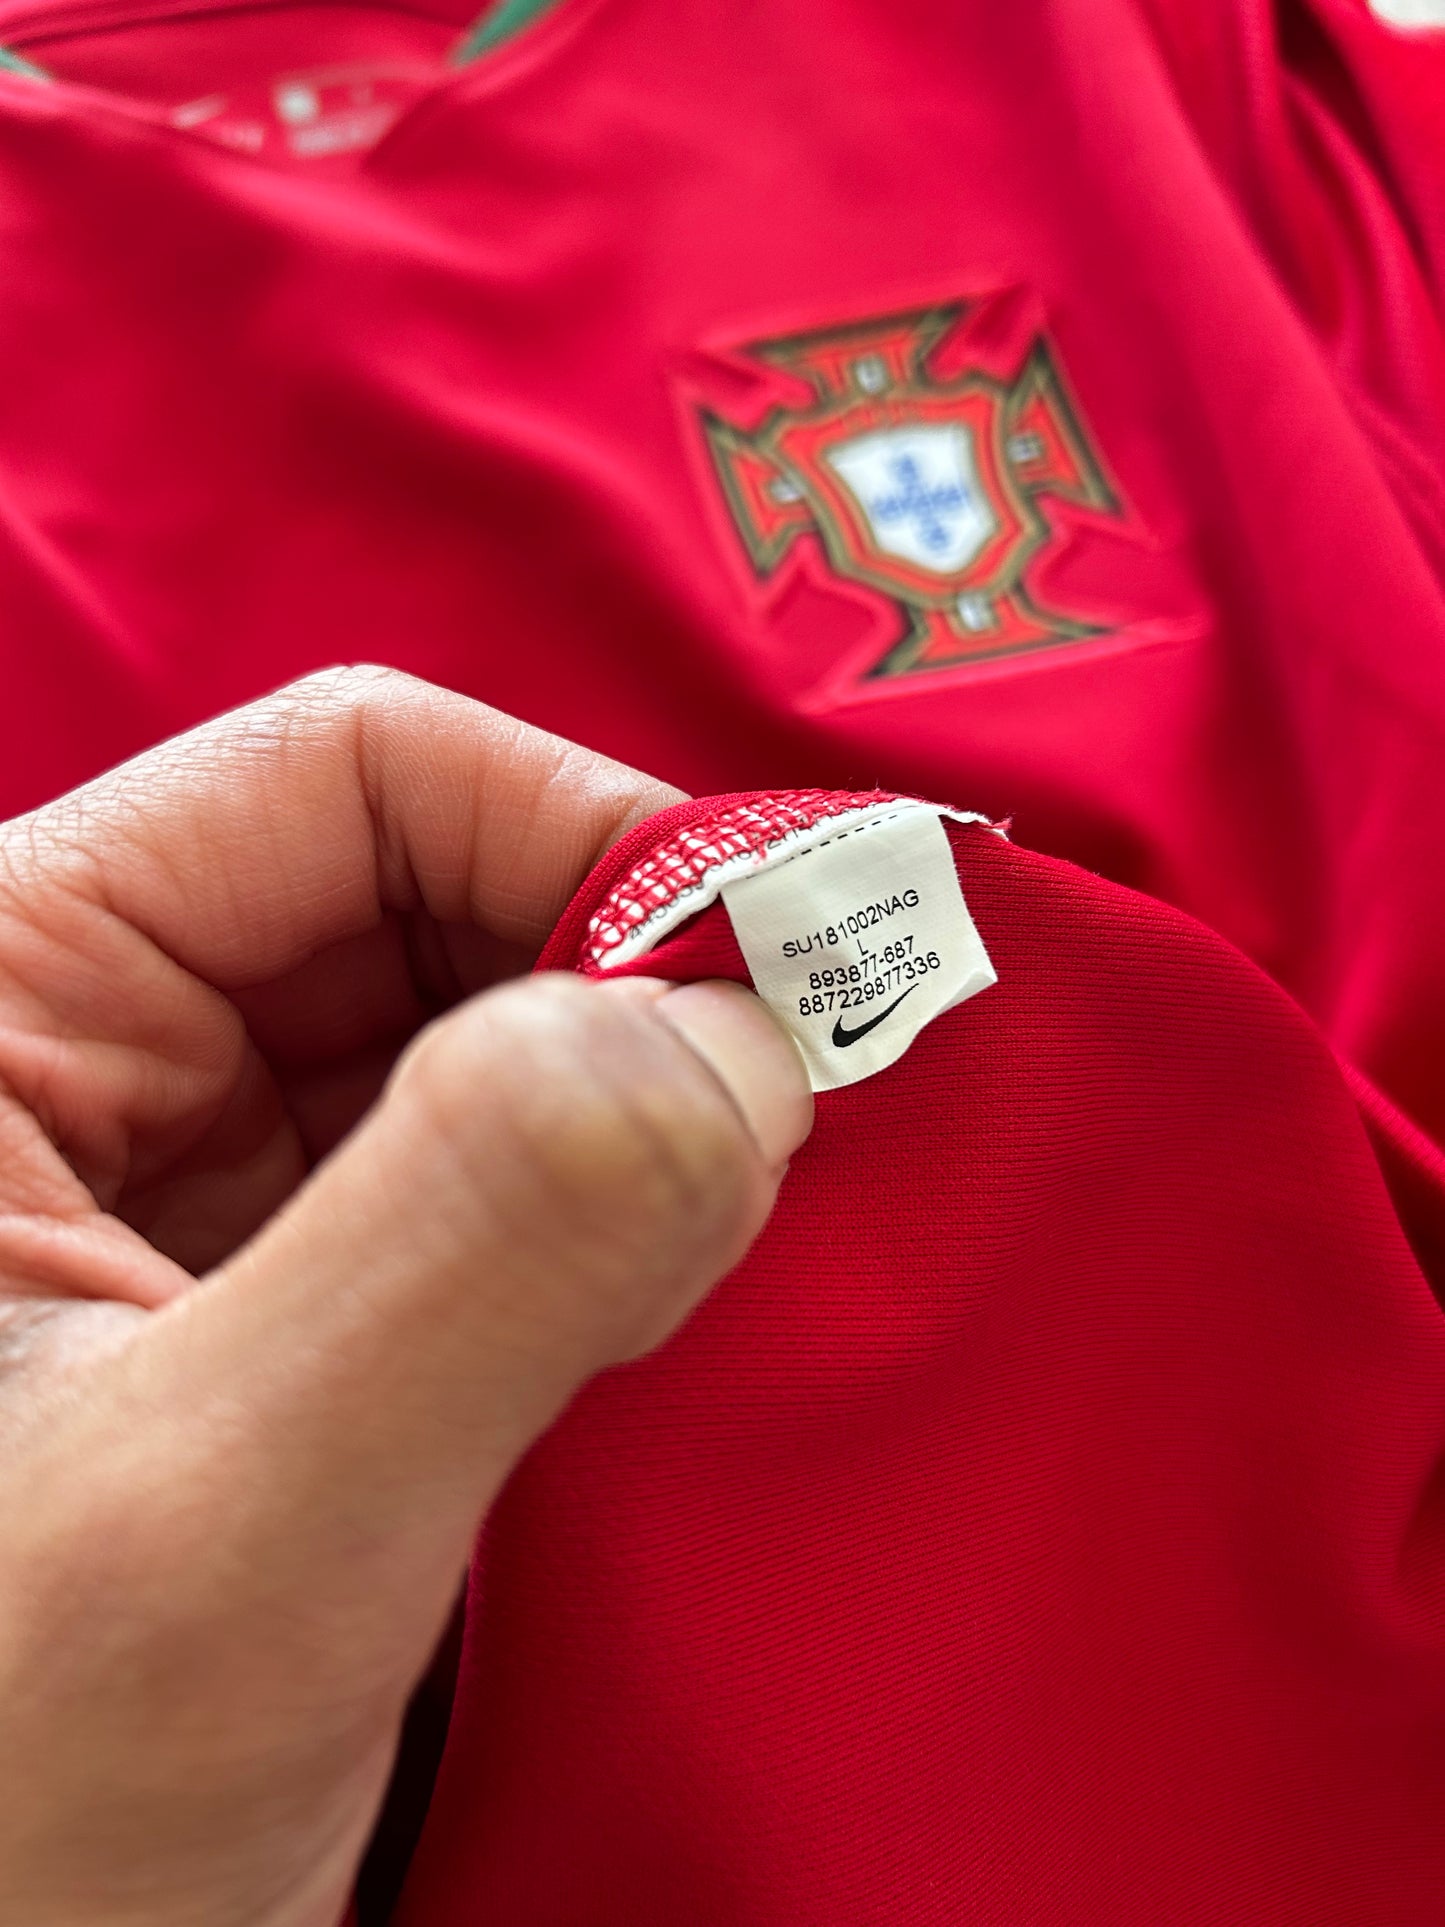 Portugal Mens National Football Team 2018 Home Shirt, #7 Cristiano Ronaldo - L